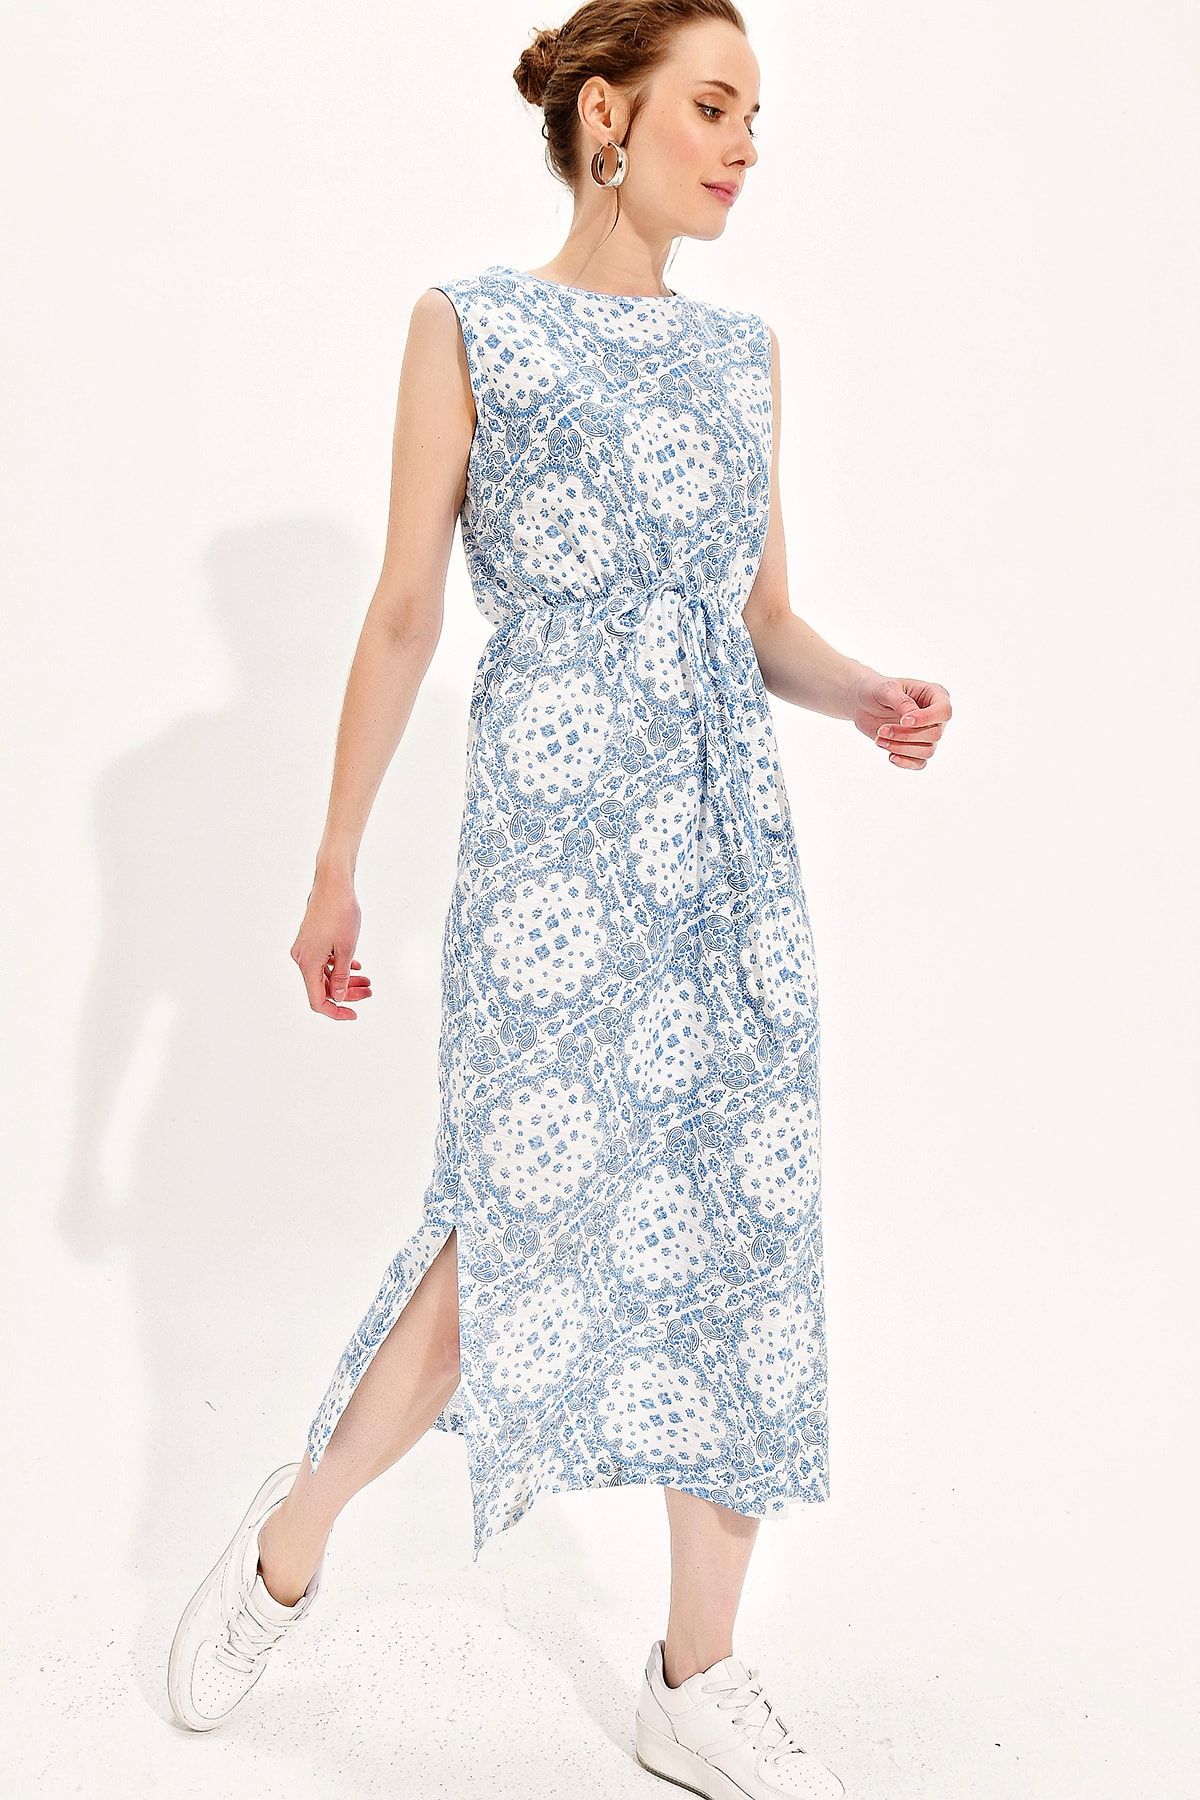 Trend Alaçatı Stili Kadın Mavi Kolsuz Desenli Elbise Alc-019-032-Sm